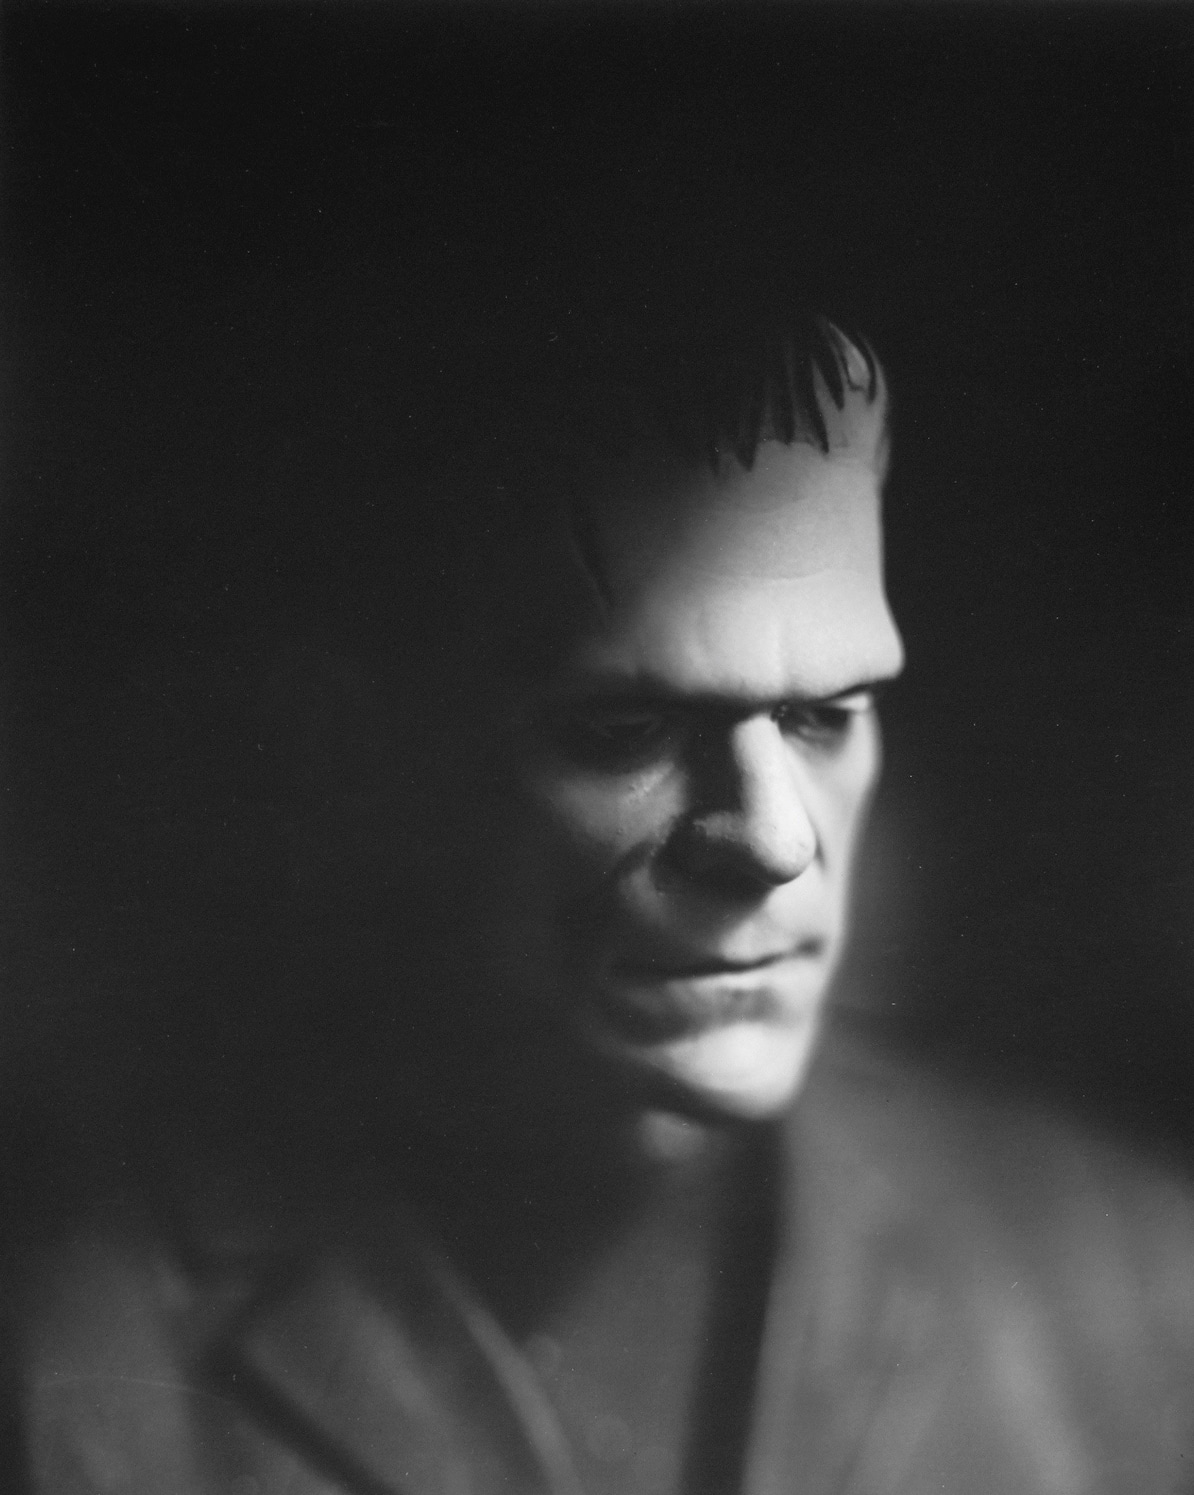 Boris Karloff / Frankenstein, 1931